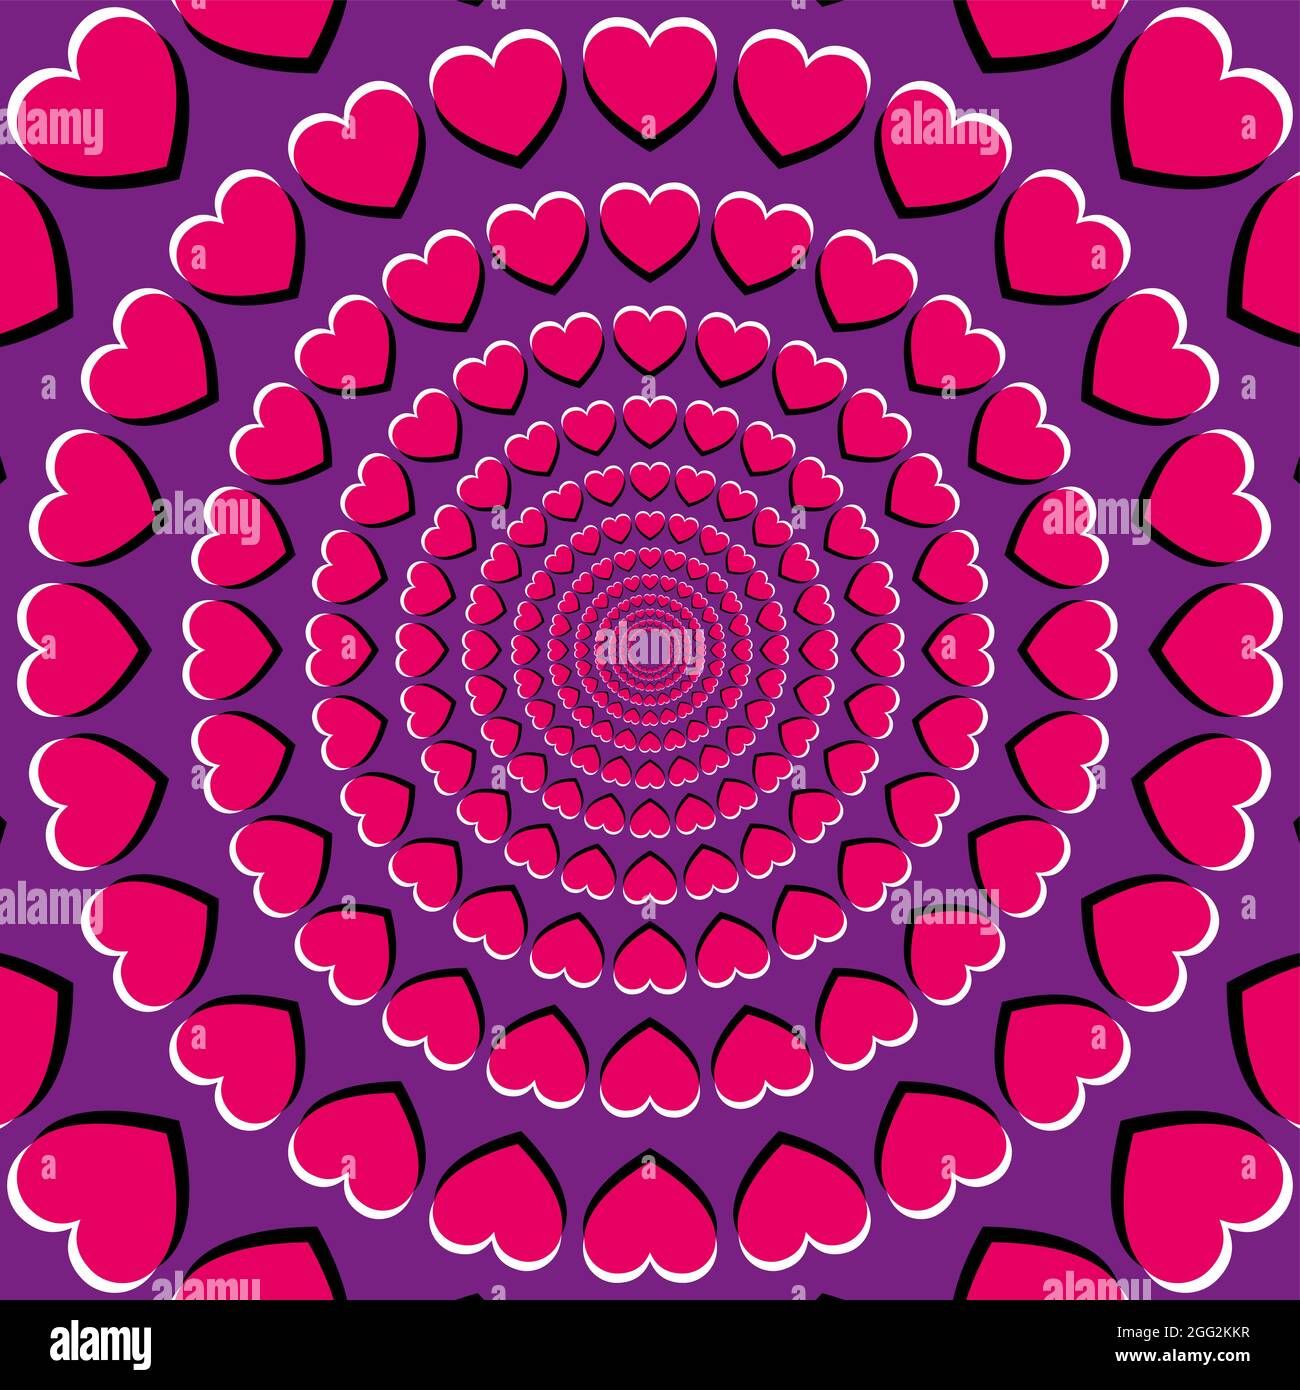 Illusione del movimento con simboli cardiaci. Illusione deriva periferica, fatta di cuori rosa su sfondo viola. Sembra che il cuore si stia muovendo e si stia muovendo. Foto Stock